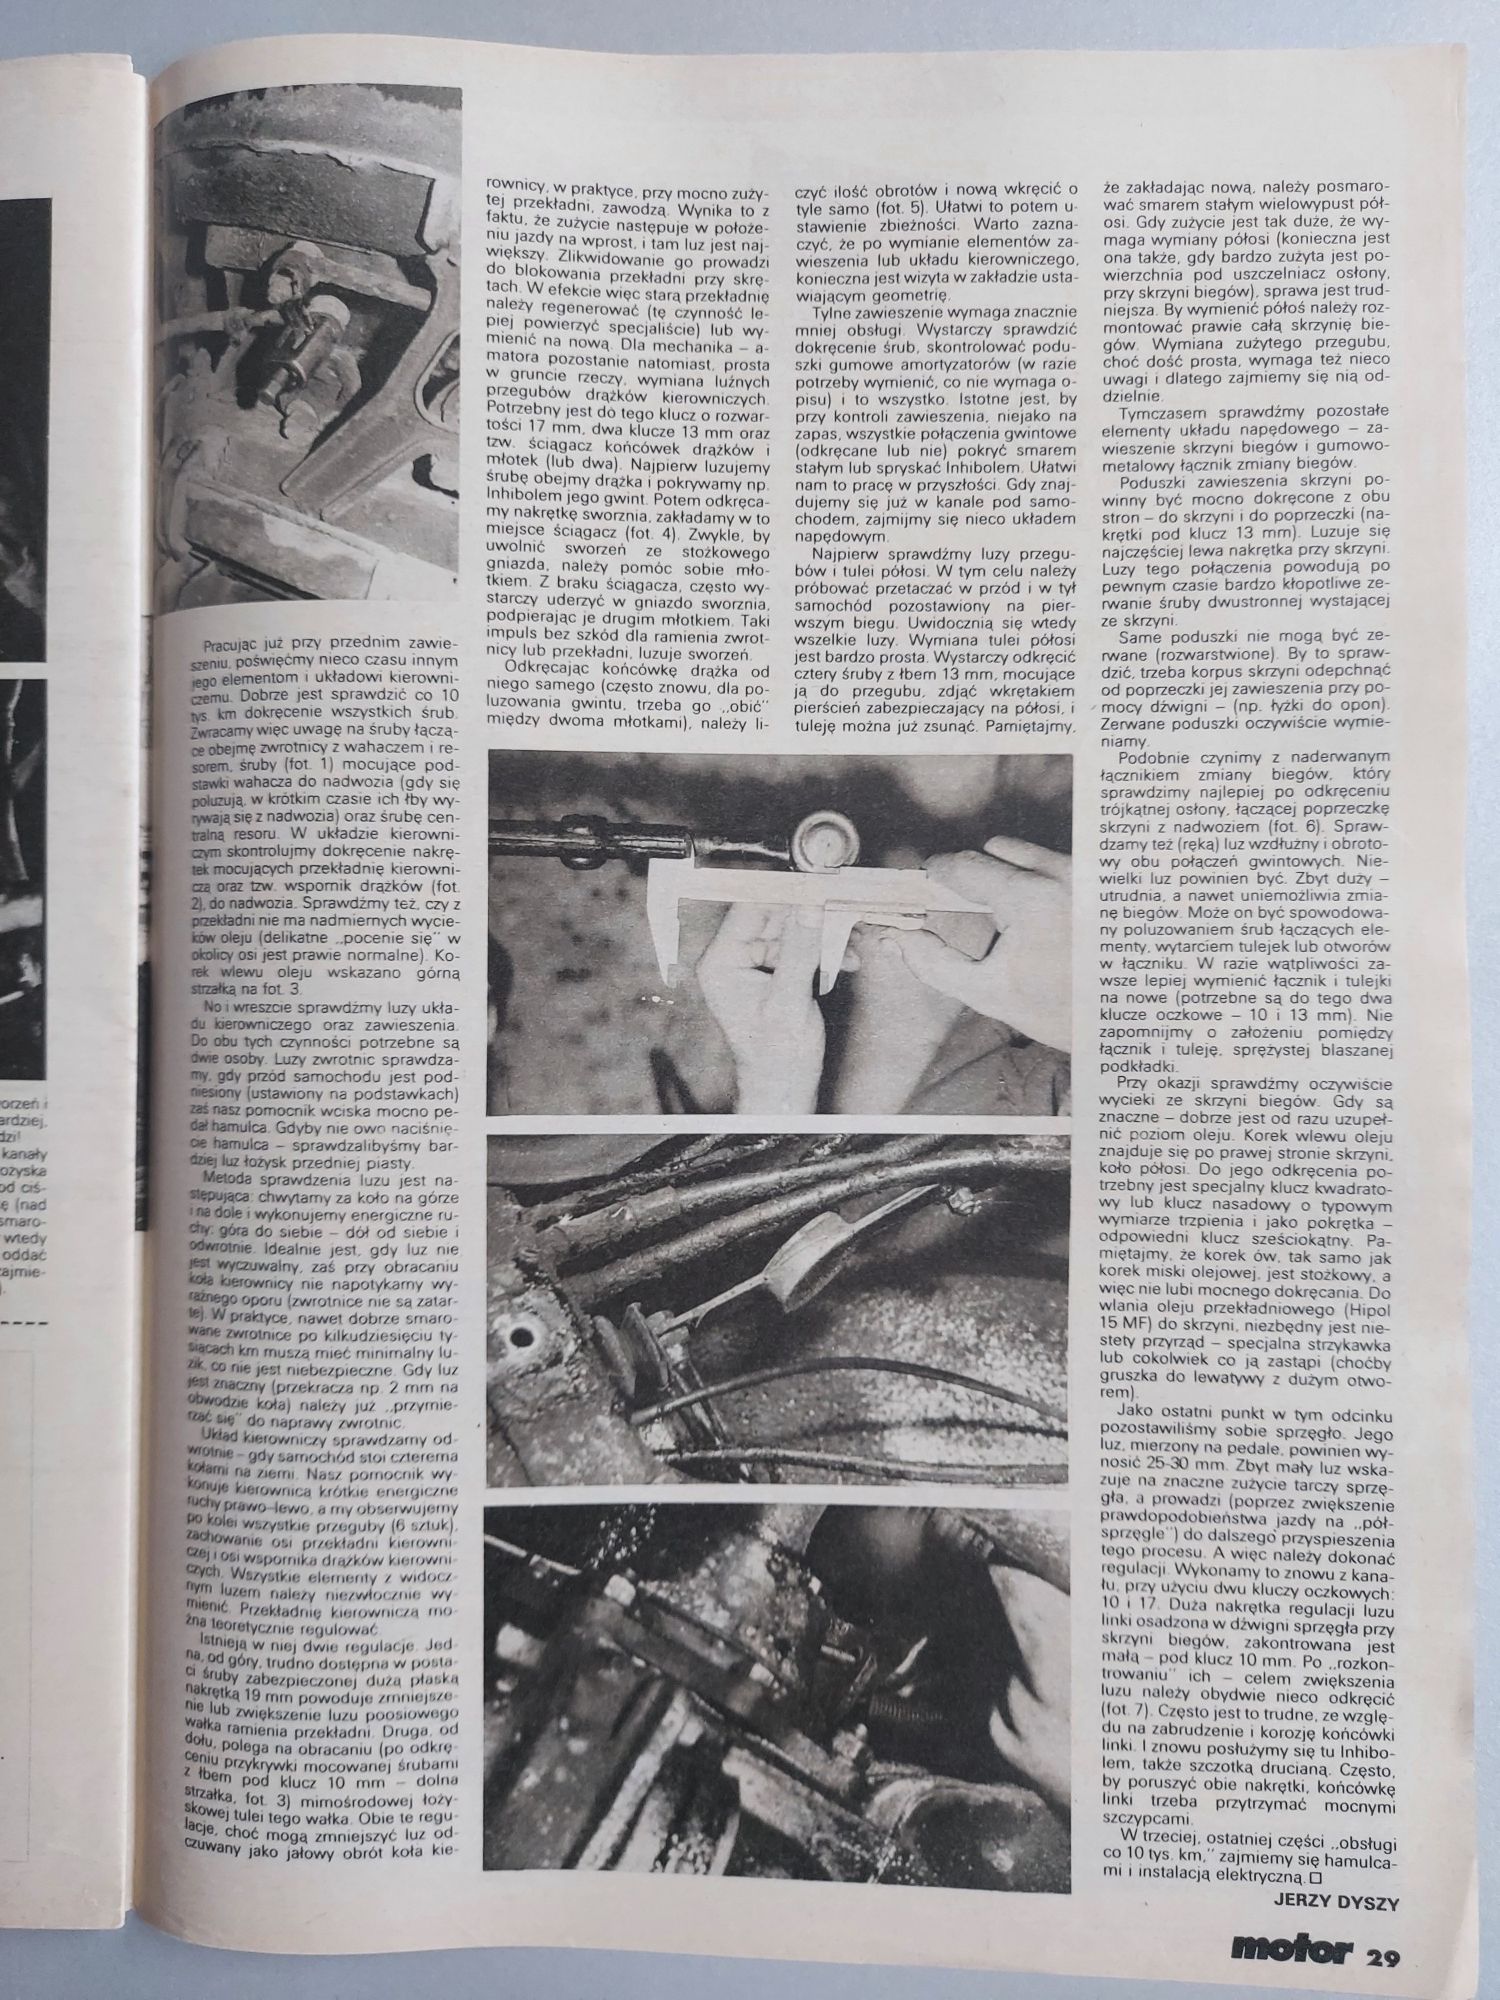 Motor - Czasopismo motoryzacyjne ze stycznia 1992 roku